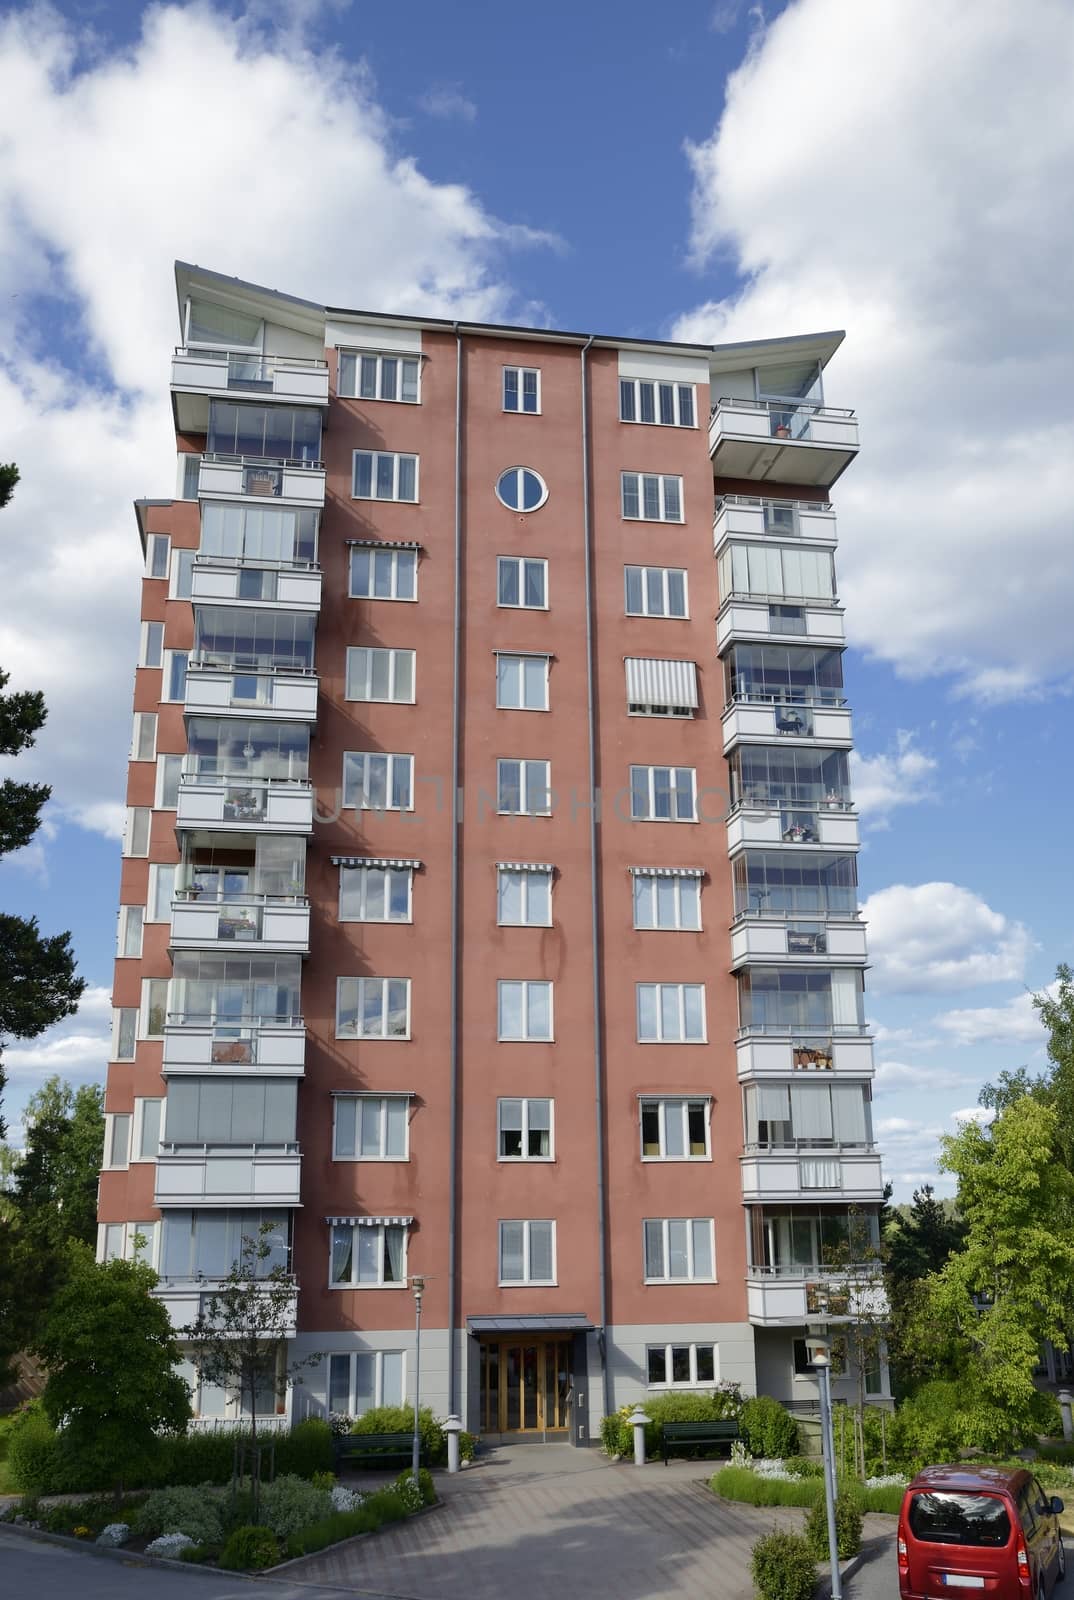 Swedish apartment Block in summer.